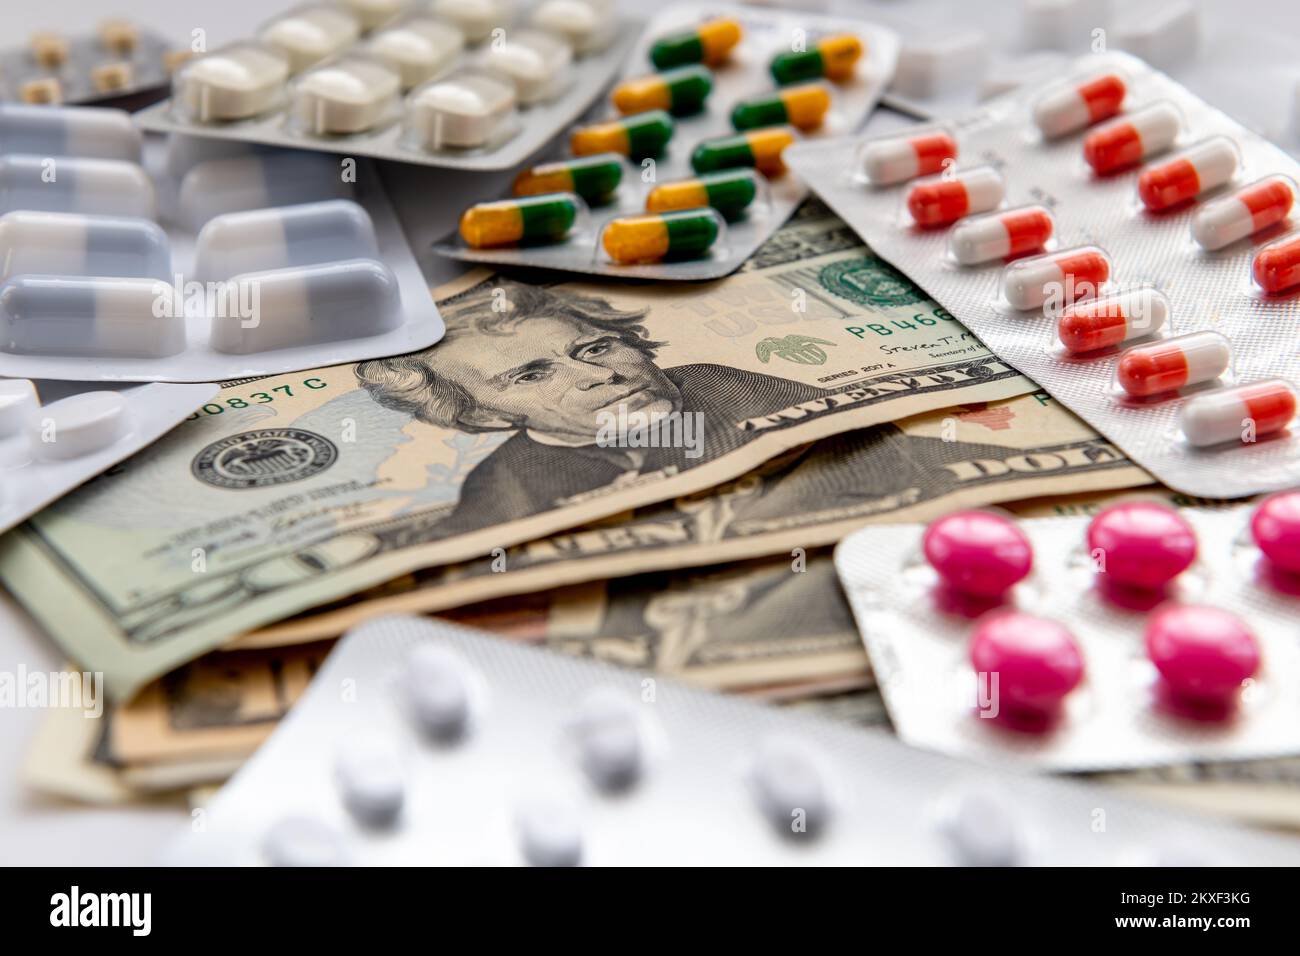 Un assortimento di medicine sparse in cima a un mazzo di fatture del dollaro degli Stati Uniti. Costo medico, grande concetto farmaceutico. Foto Stock